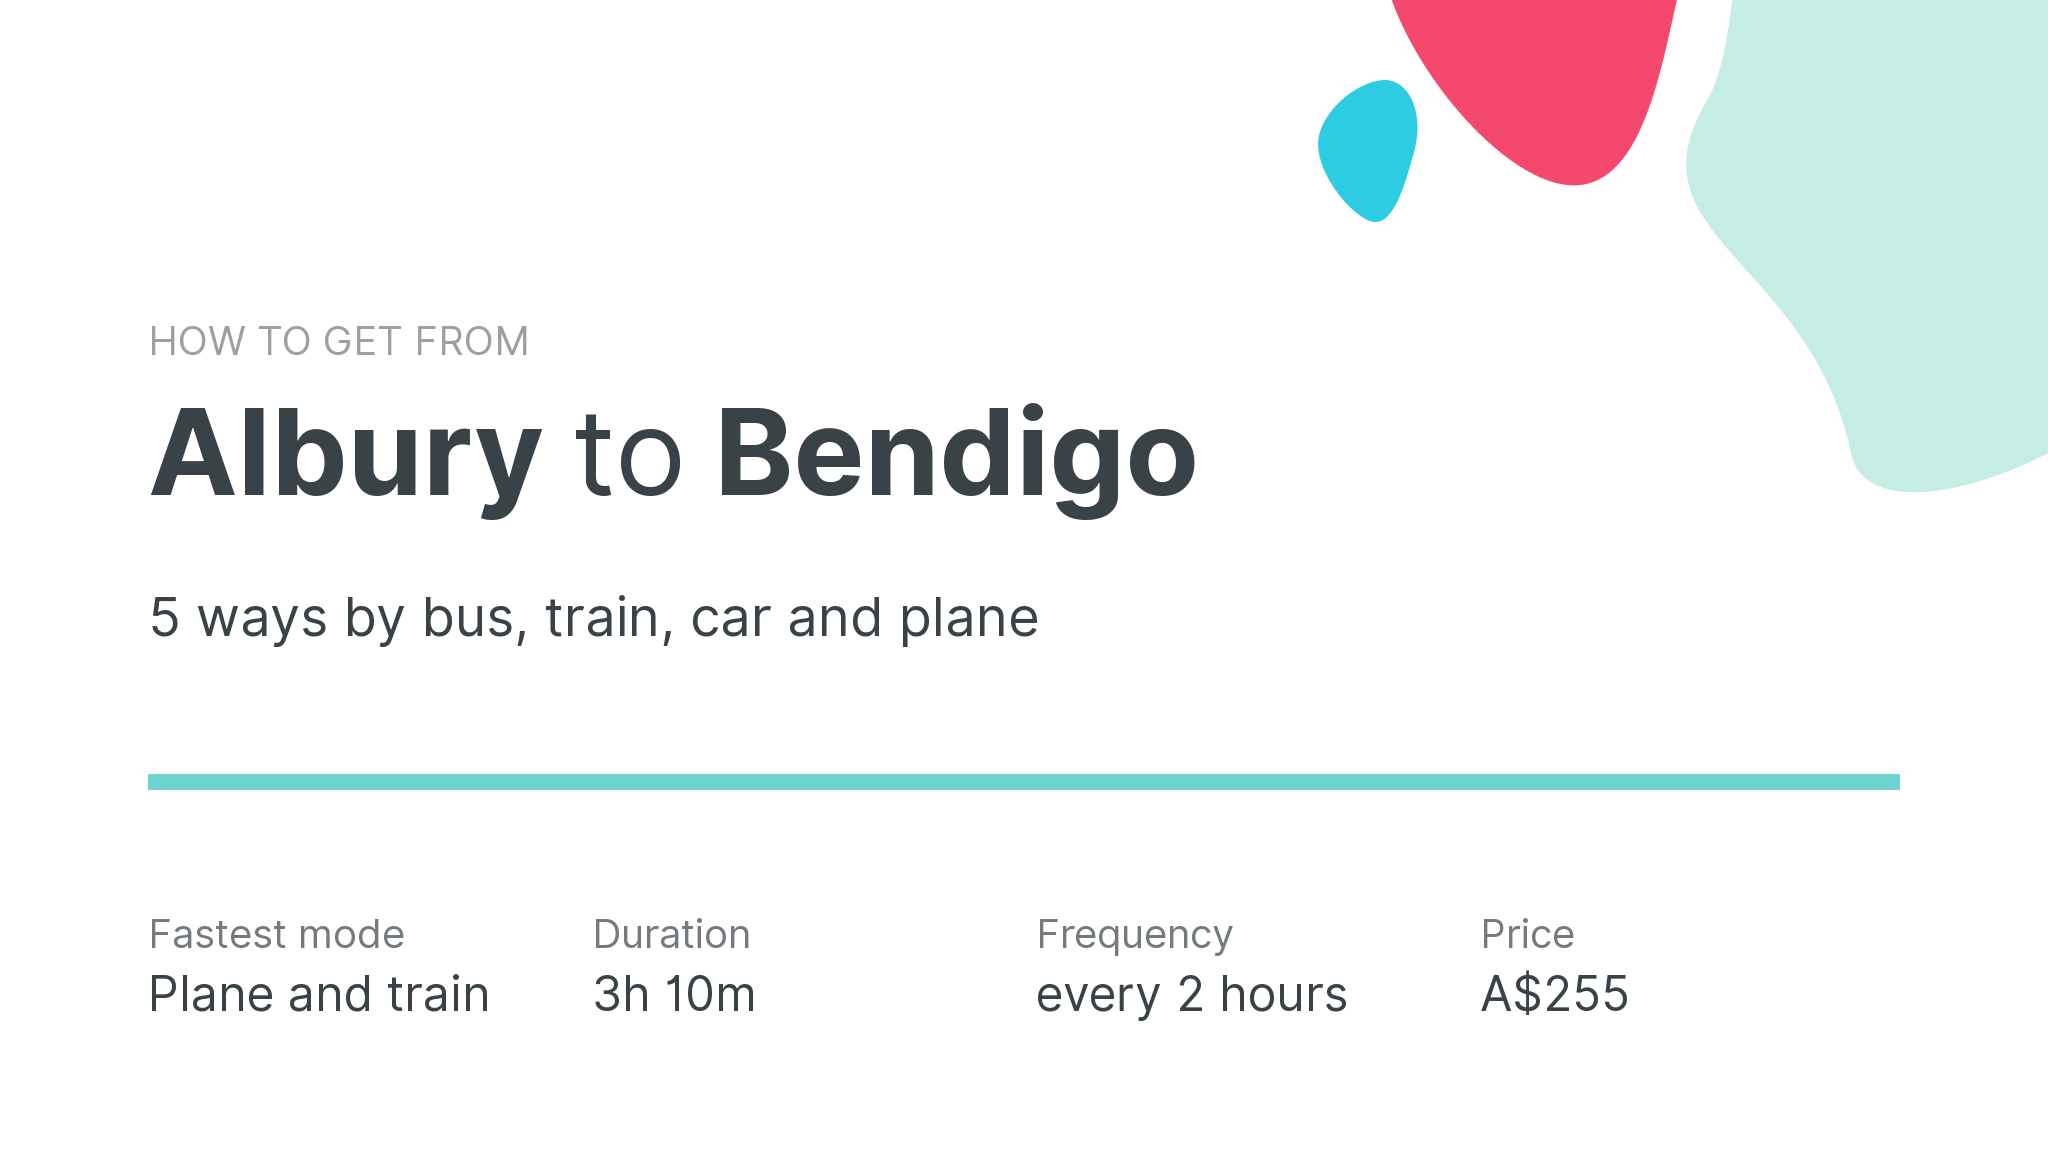 How do I get from Albury to Bendigo